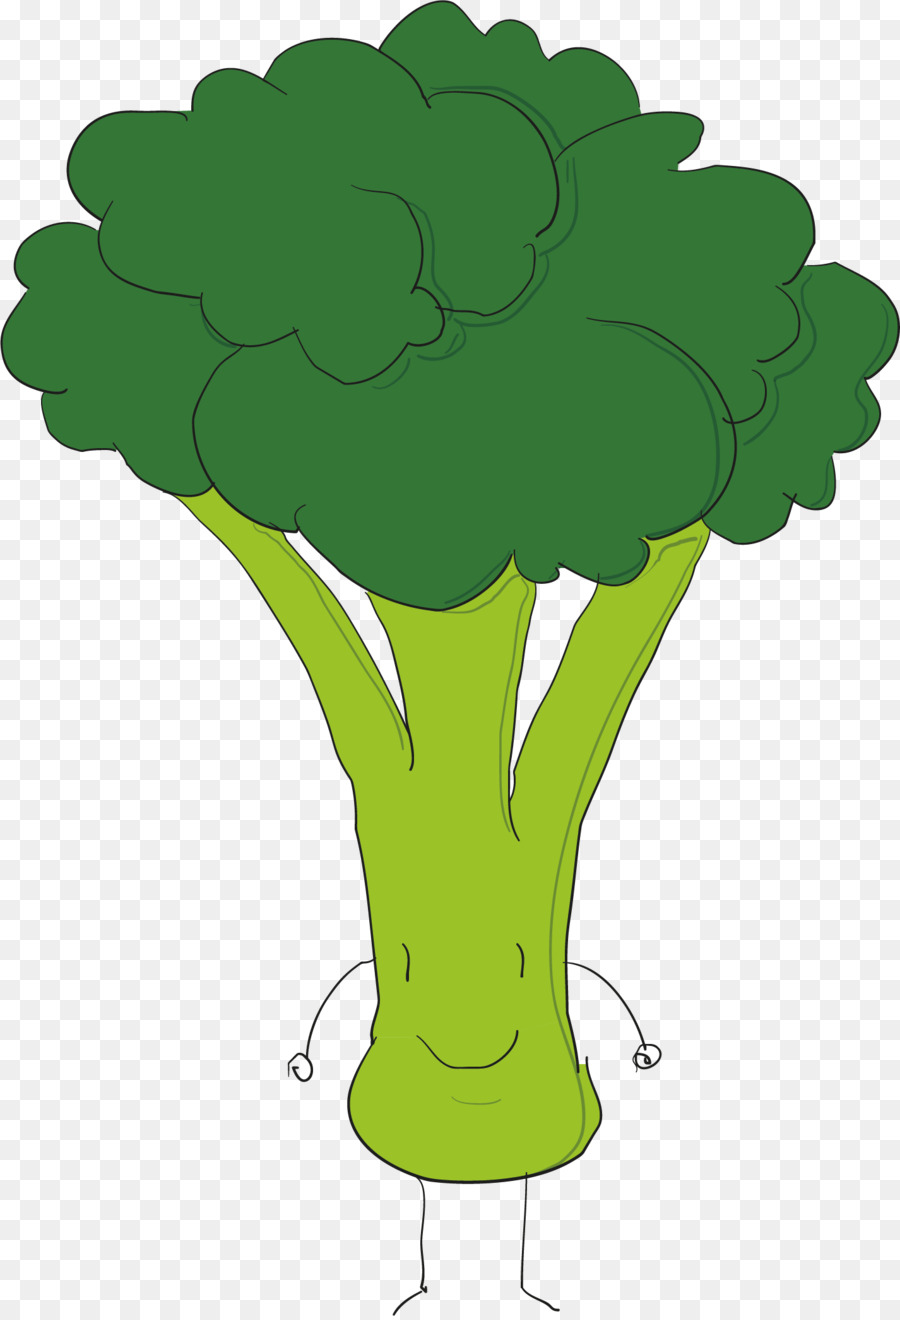 Broccoli Euclidean vector - Broccoli vector png download - 1426*2085 - Free Transparent Broccoli png Download.